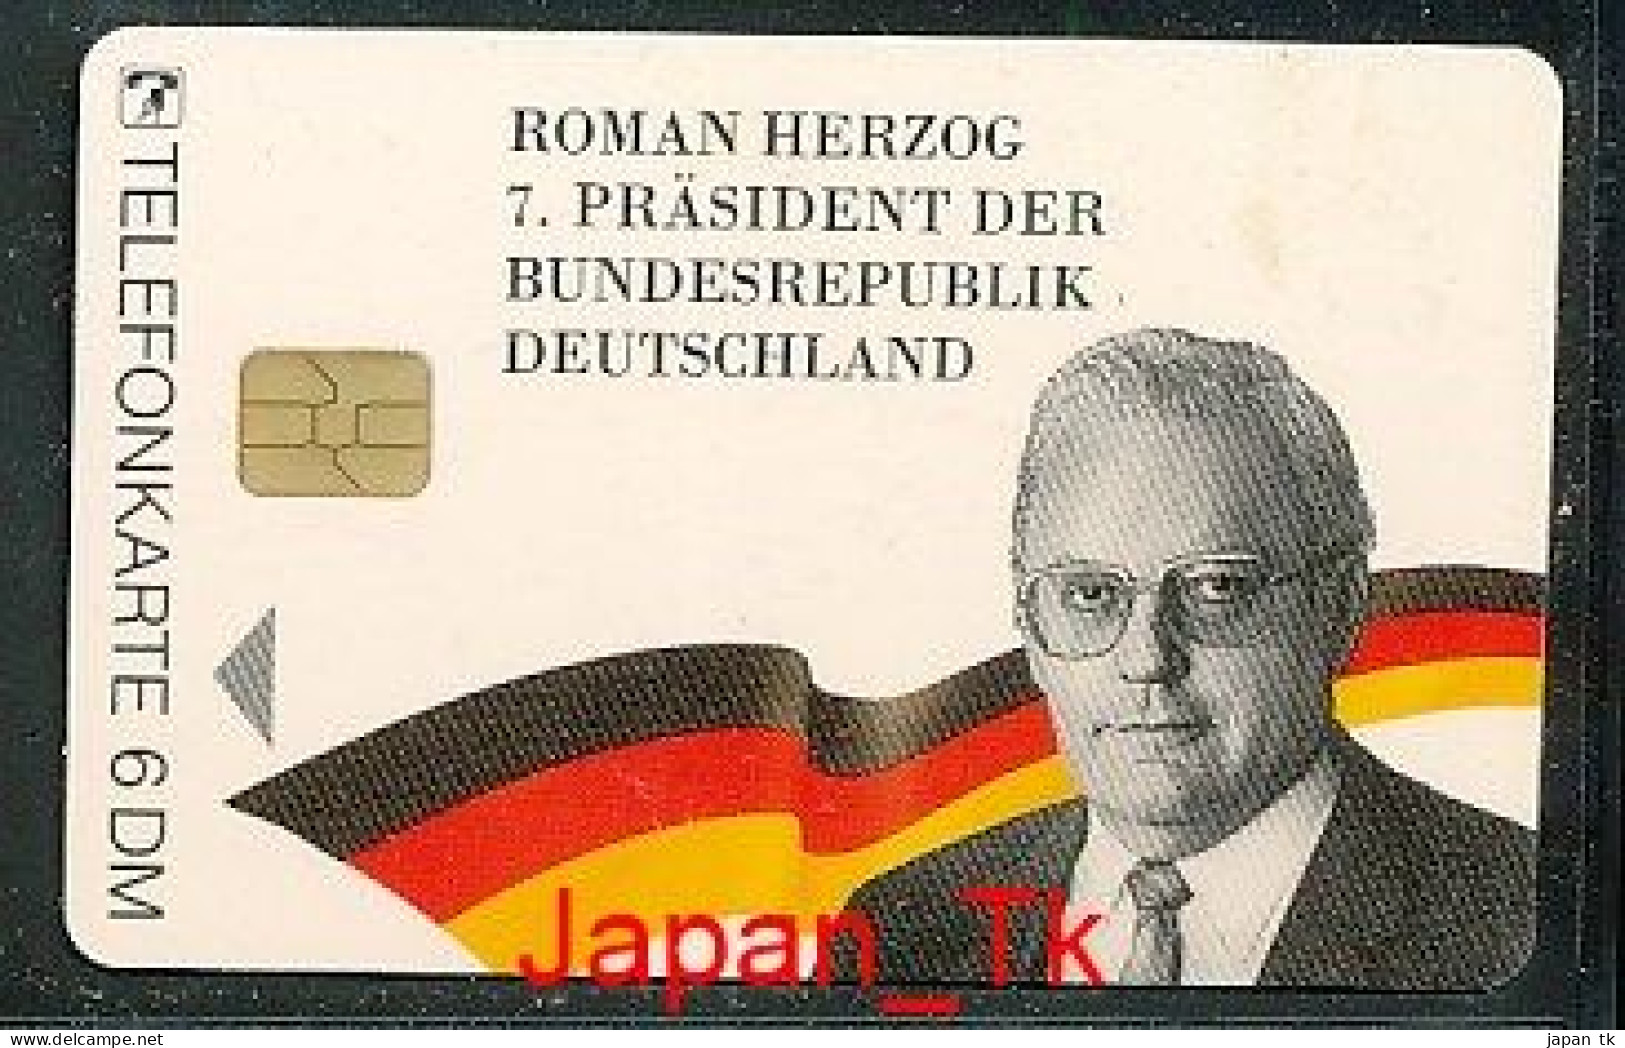 GERMANY O 1531 94 Roman Herzog  - Aufl  2000 - Siehe Scan - O-Series: Kundenserie Vom Sammlerservice Ausgeschlossen